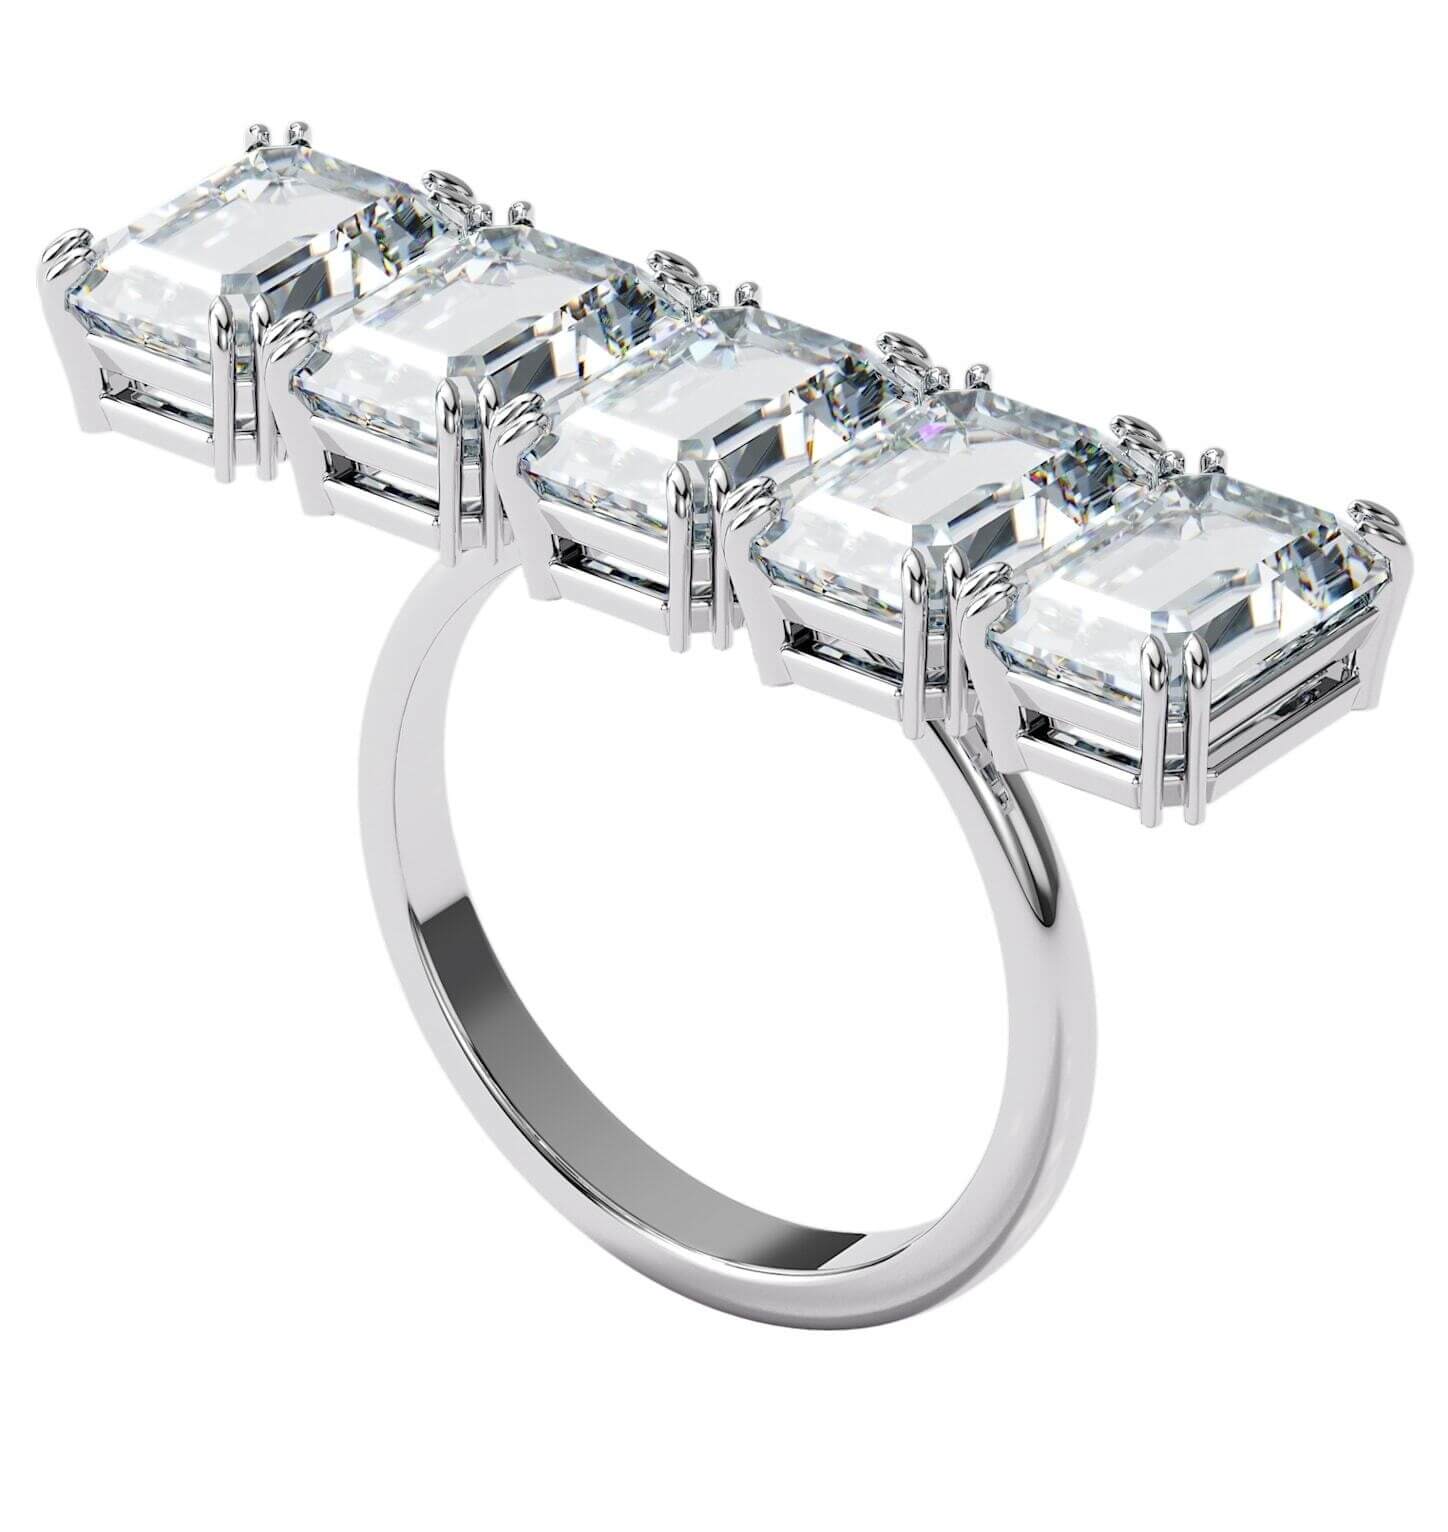 Swarovski Masivní třpytivý prsten s krystaly Millenia 5610730 52 mm